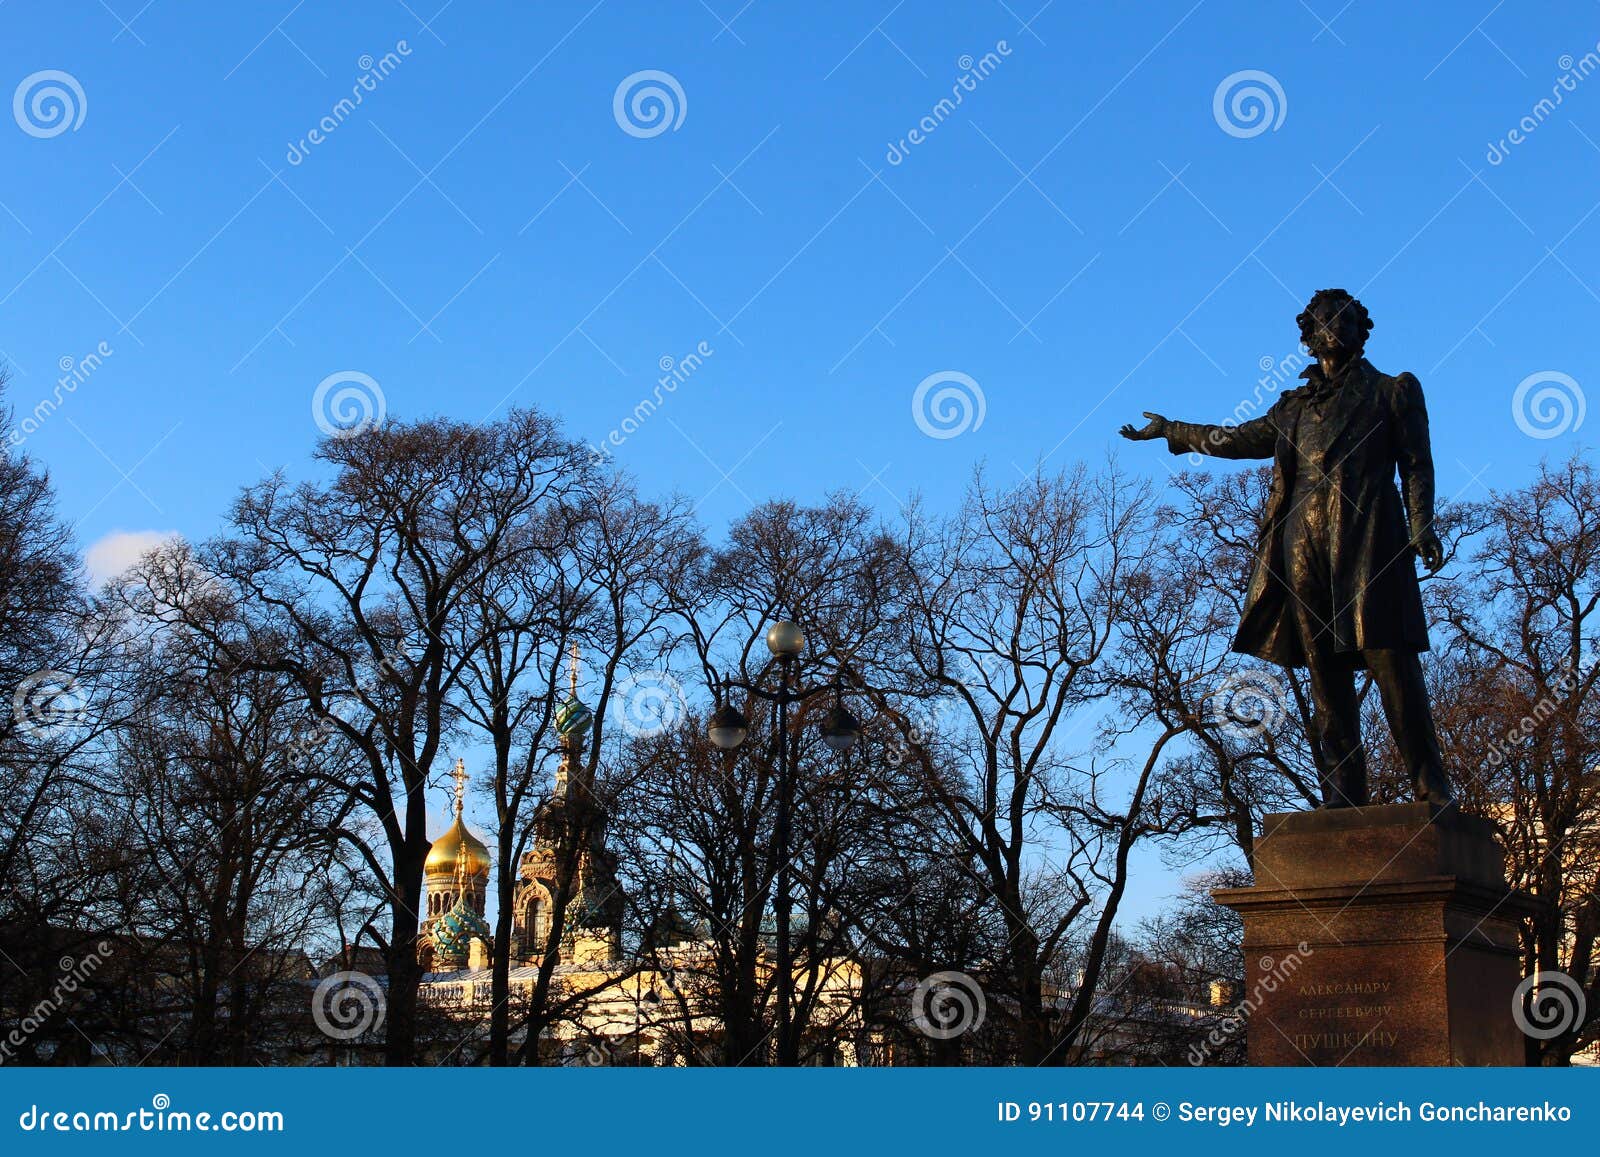 Pushkin A C. Il classico la scultura attira l'attenzione dei turisti da ogni parte del mondo